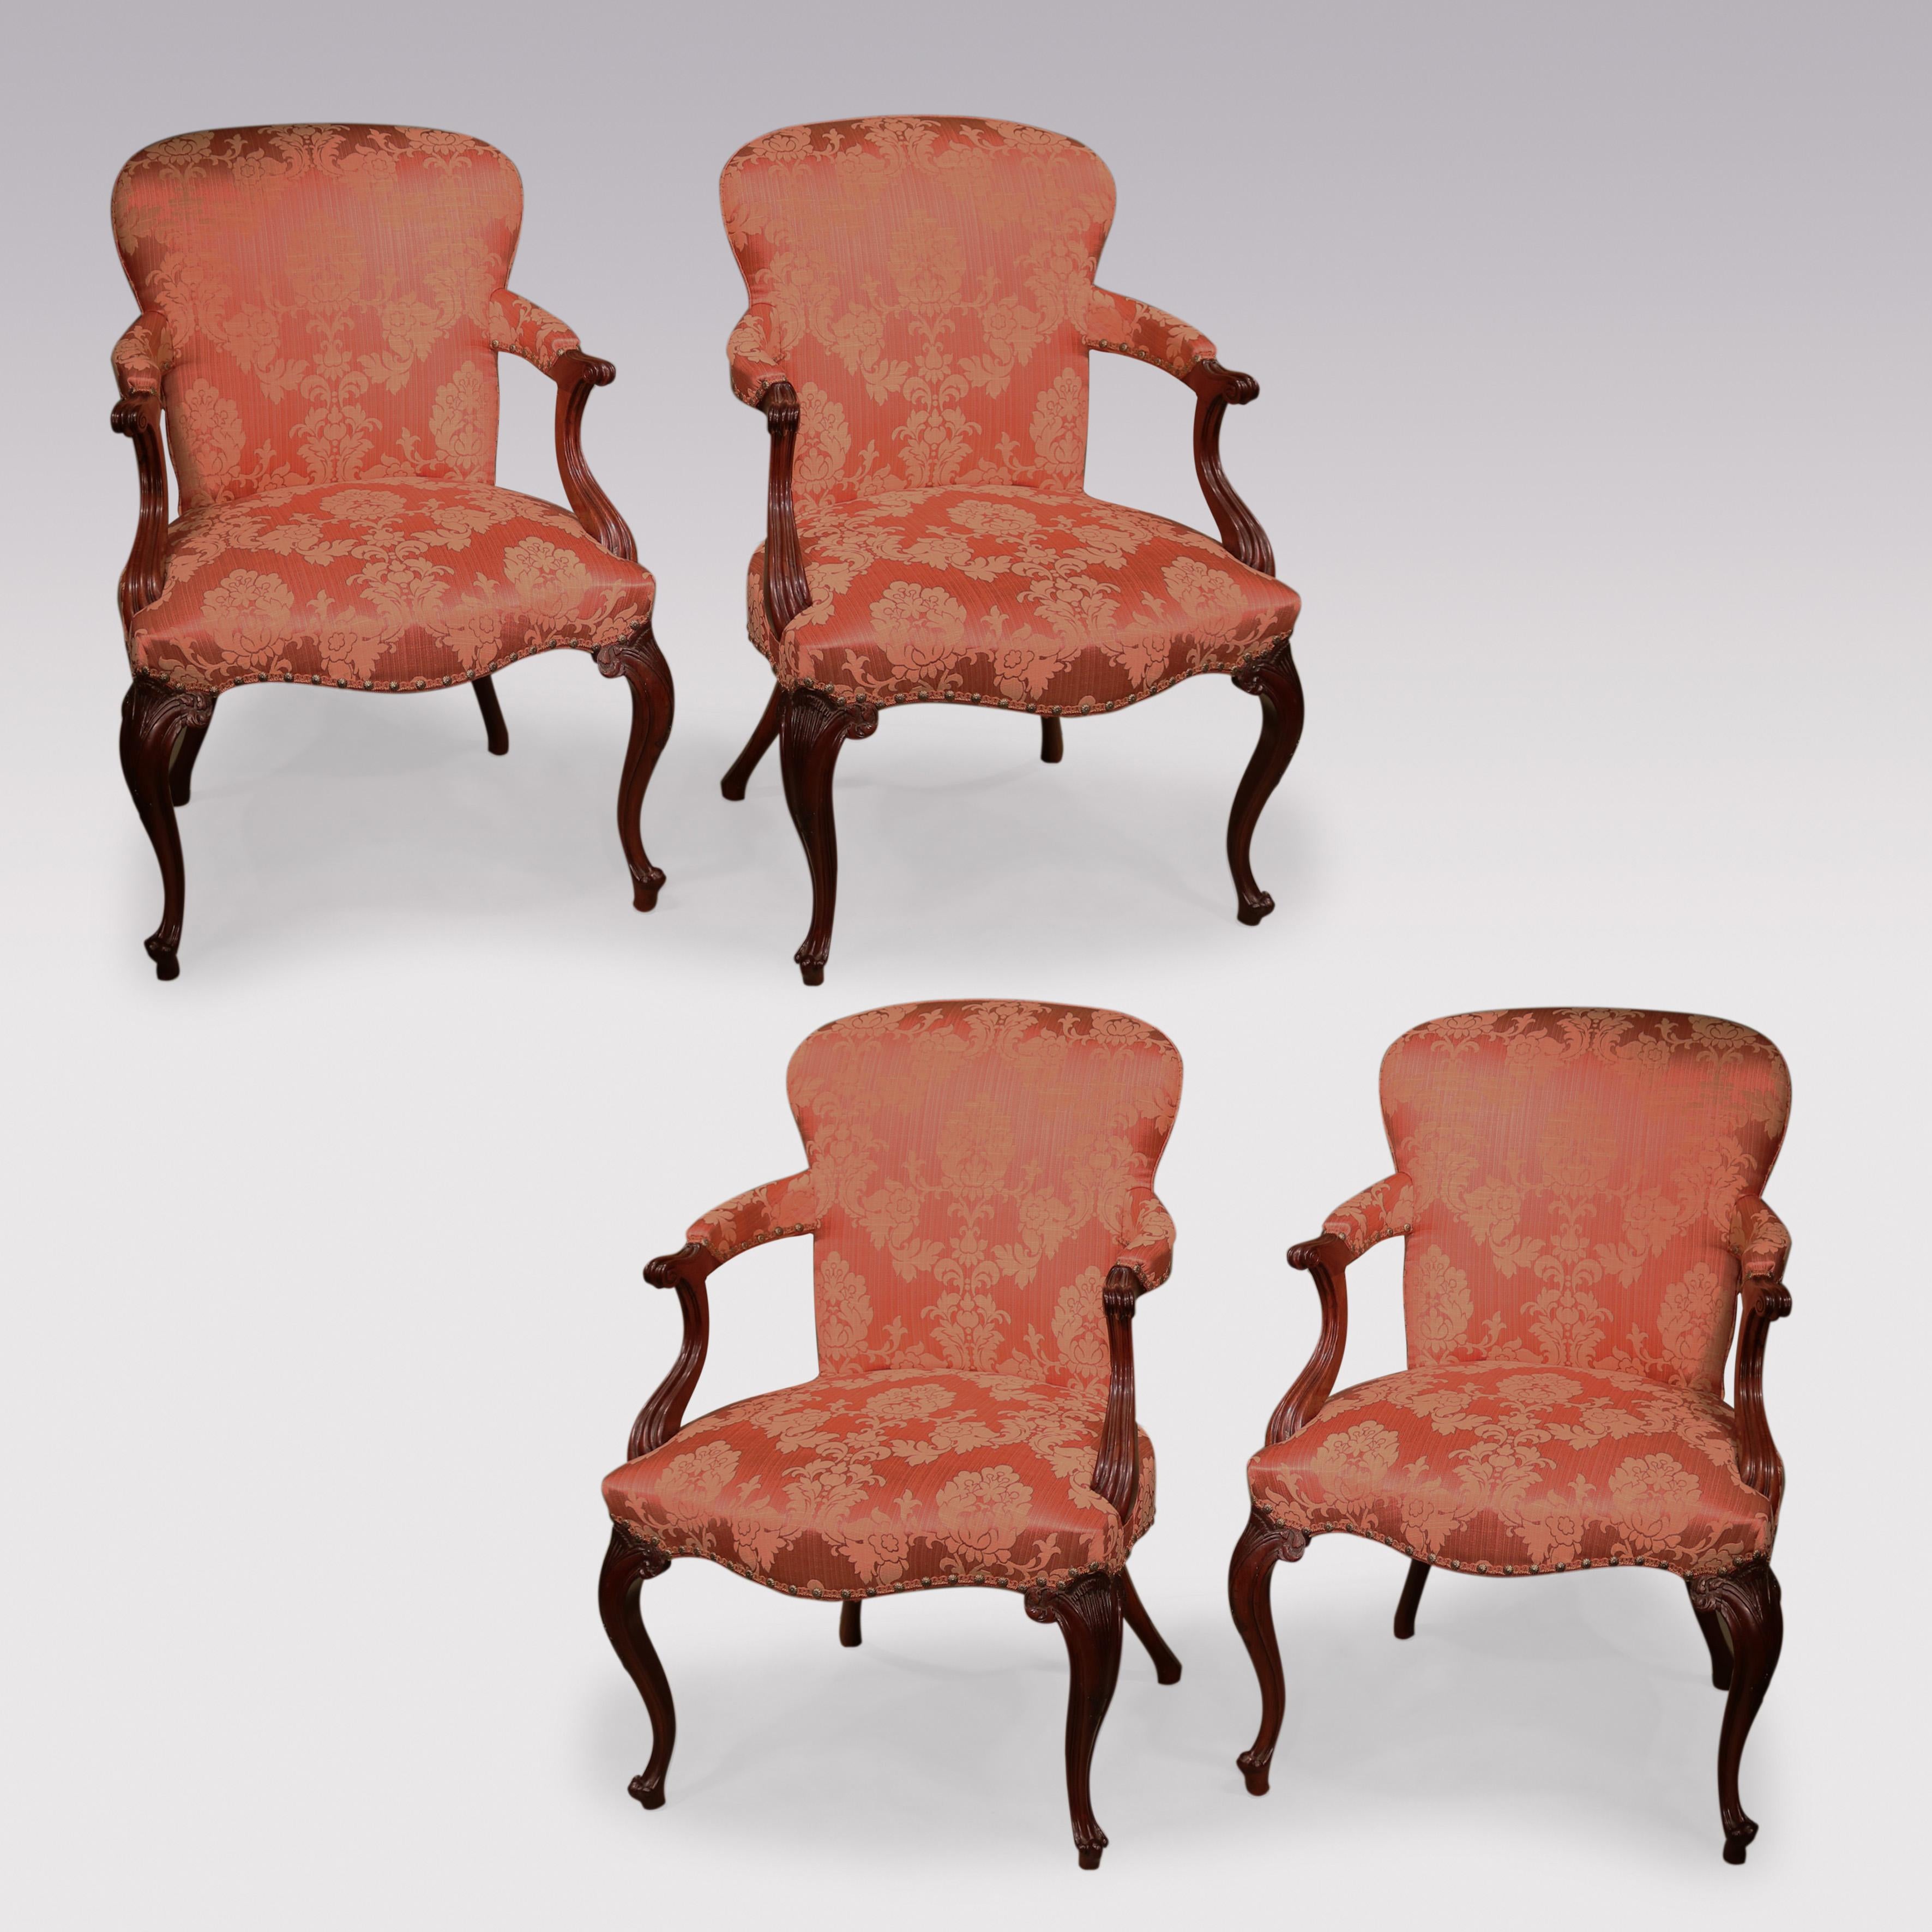 Un bel ensemble de 4 fauteuils rembourrés en acajou de la fin du XVIIIe siècle de la période Hepplewhite, à la manière française, avec des dossiers en forme et des accoudoirs moulés à l'arrière et à l'extrémité en volute.  Les chaises sont dotées